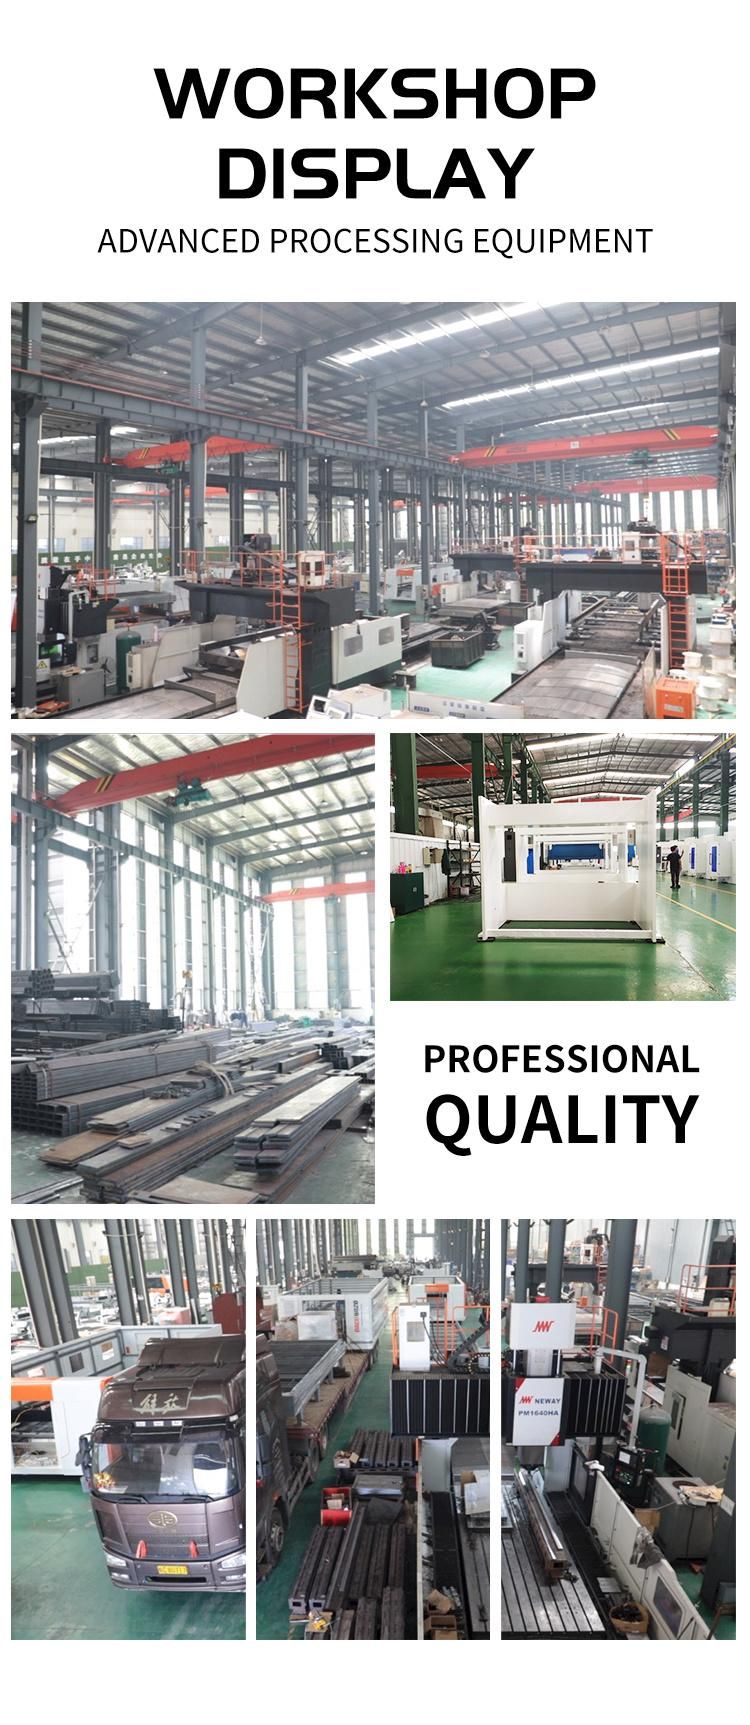 Njwg 400t/6000 CNC Hydraulic Press Brake Sheet Metal Press Brake Machine for Metal Working